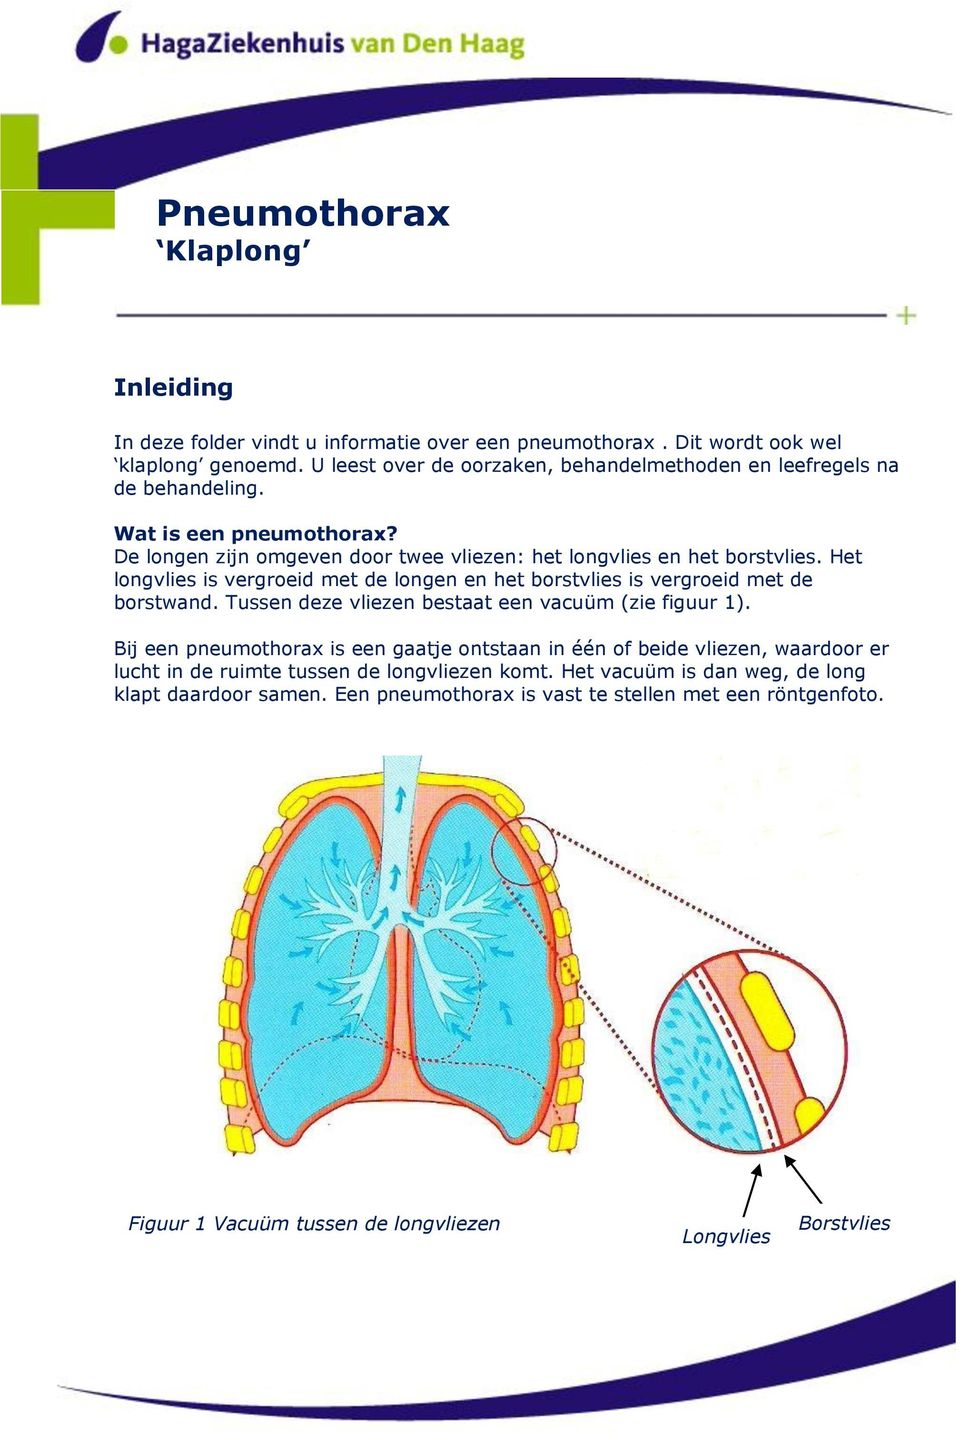 Het longvlies is vergroeid met de longen en het borstvlies is vergroeid met de borstwand. Tussen deze vliezen bestaat een vacuüm (zie figuur 1).